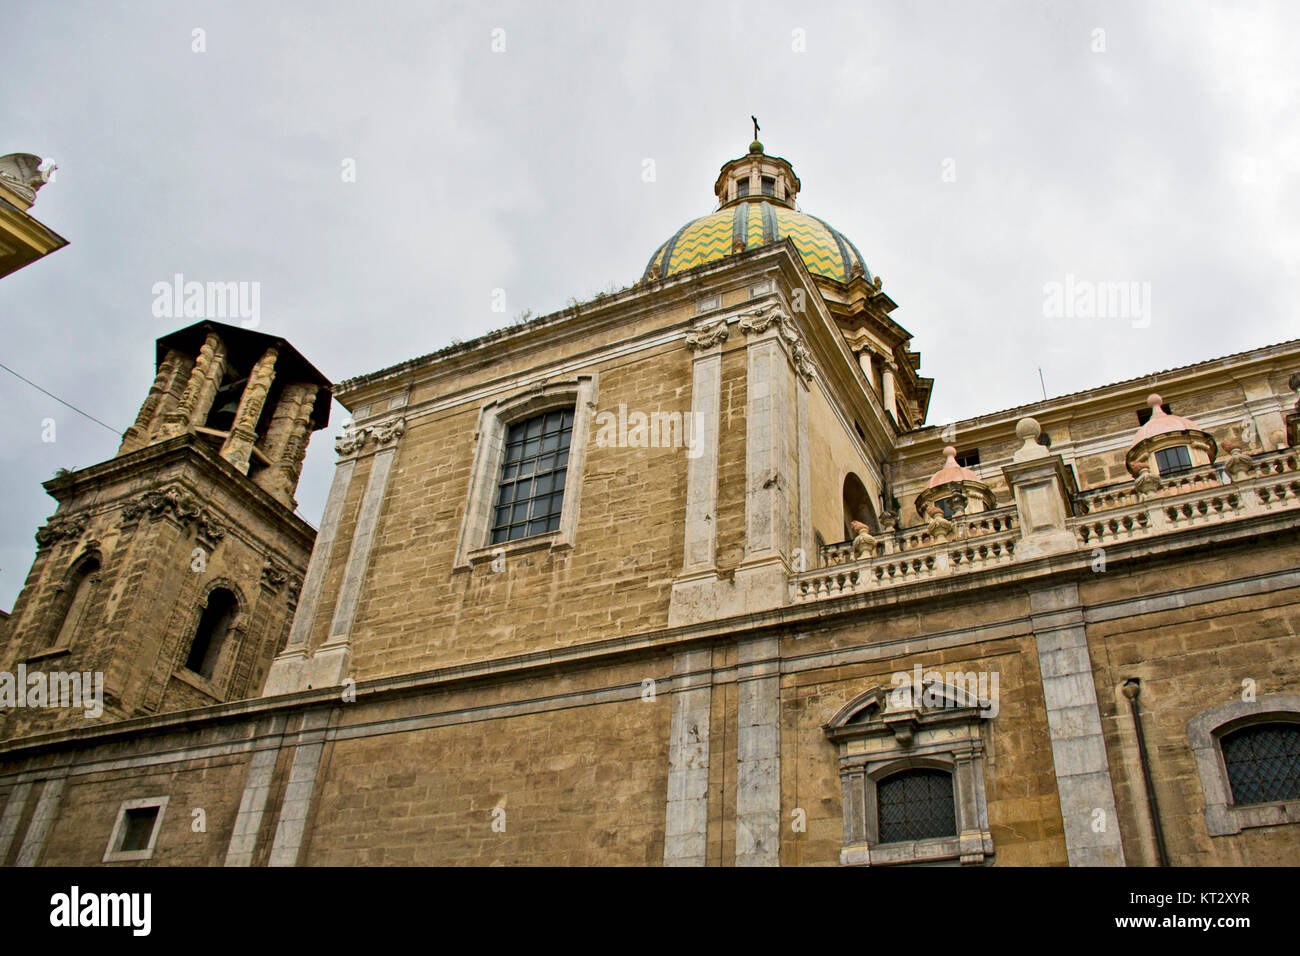 Palermo, Sicily - Italy Stock Photo